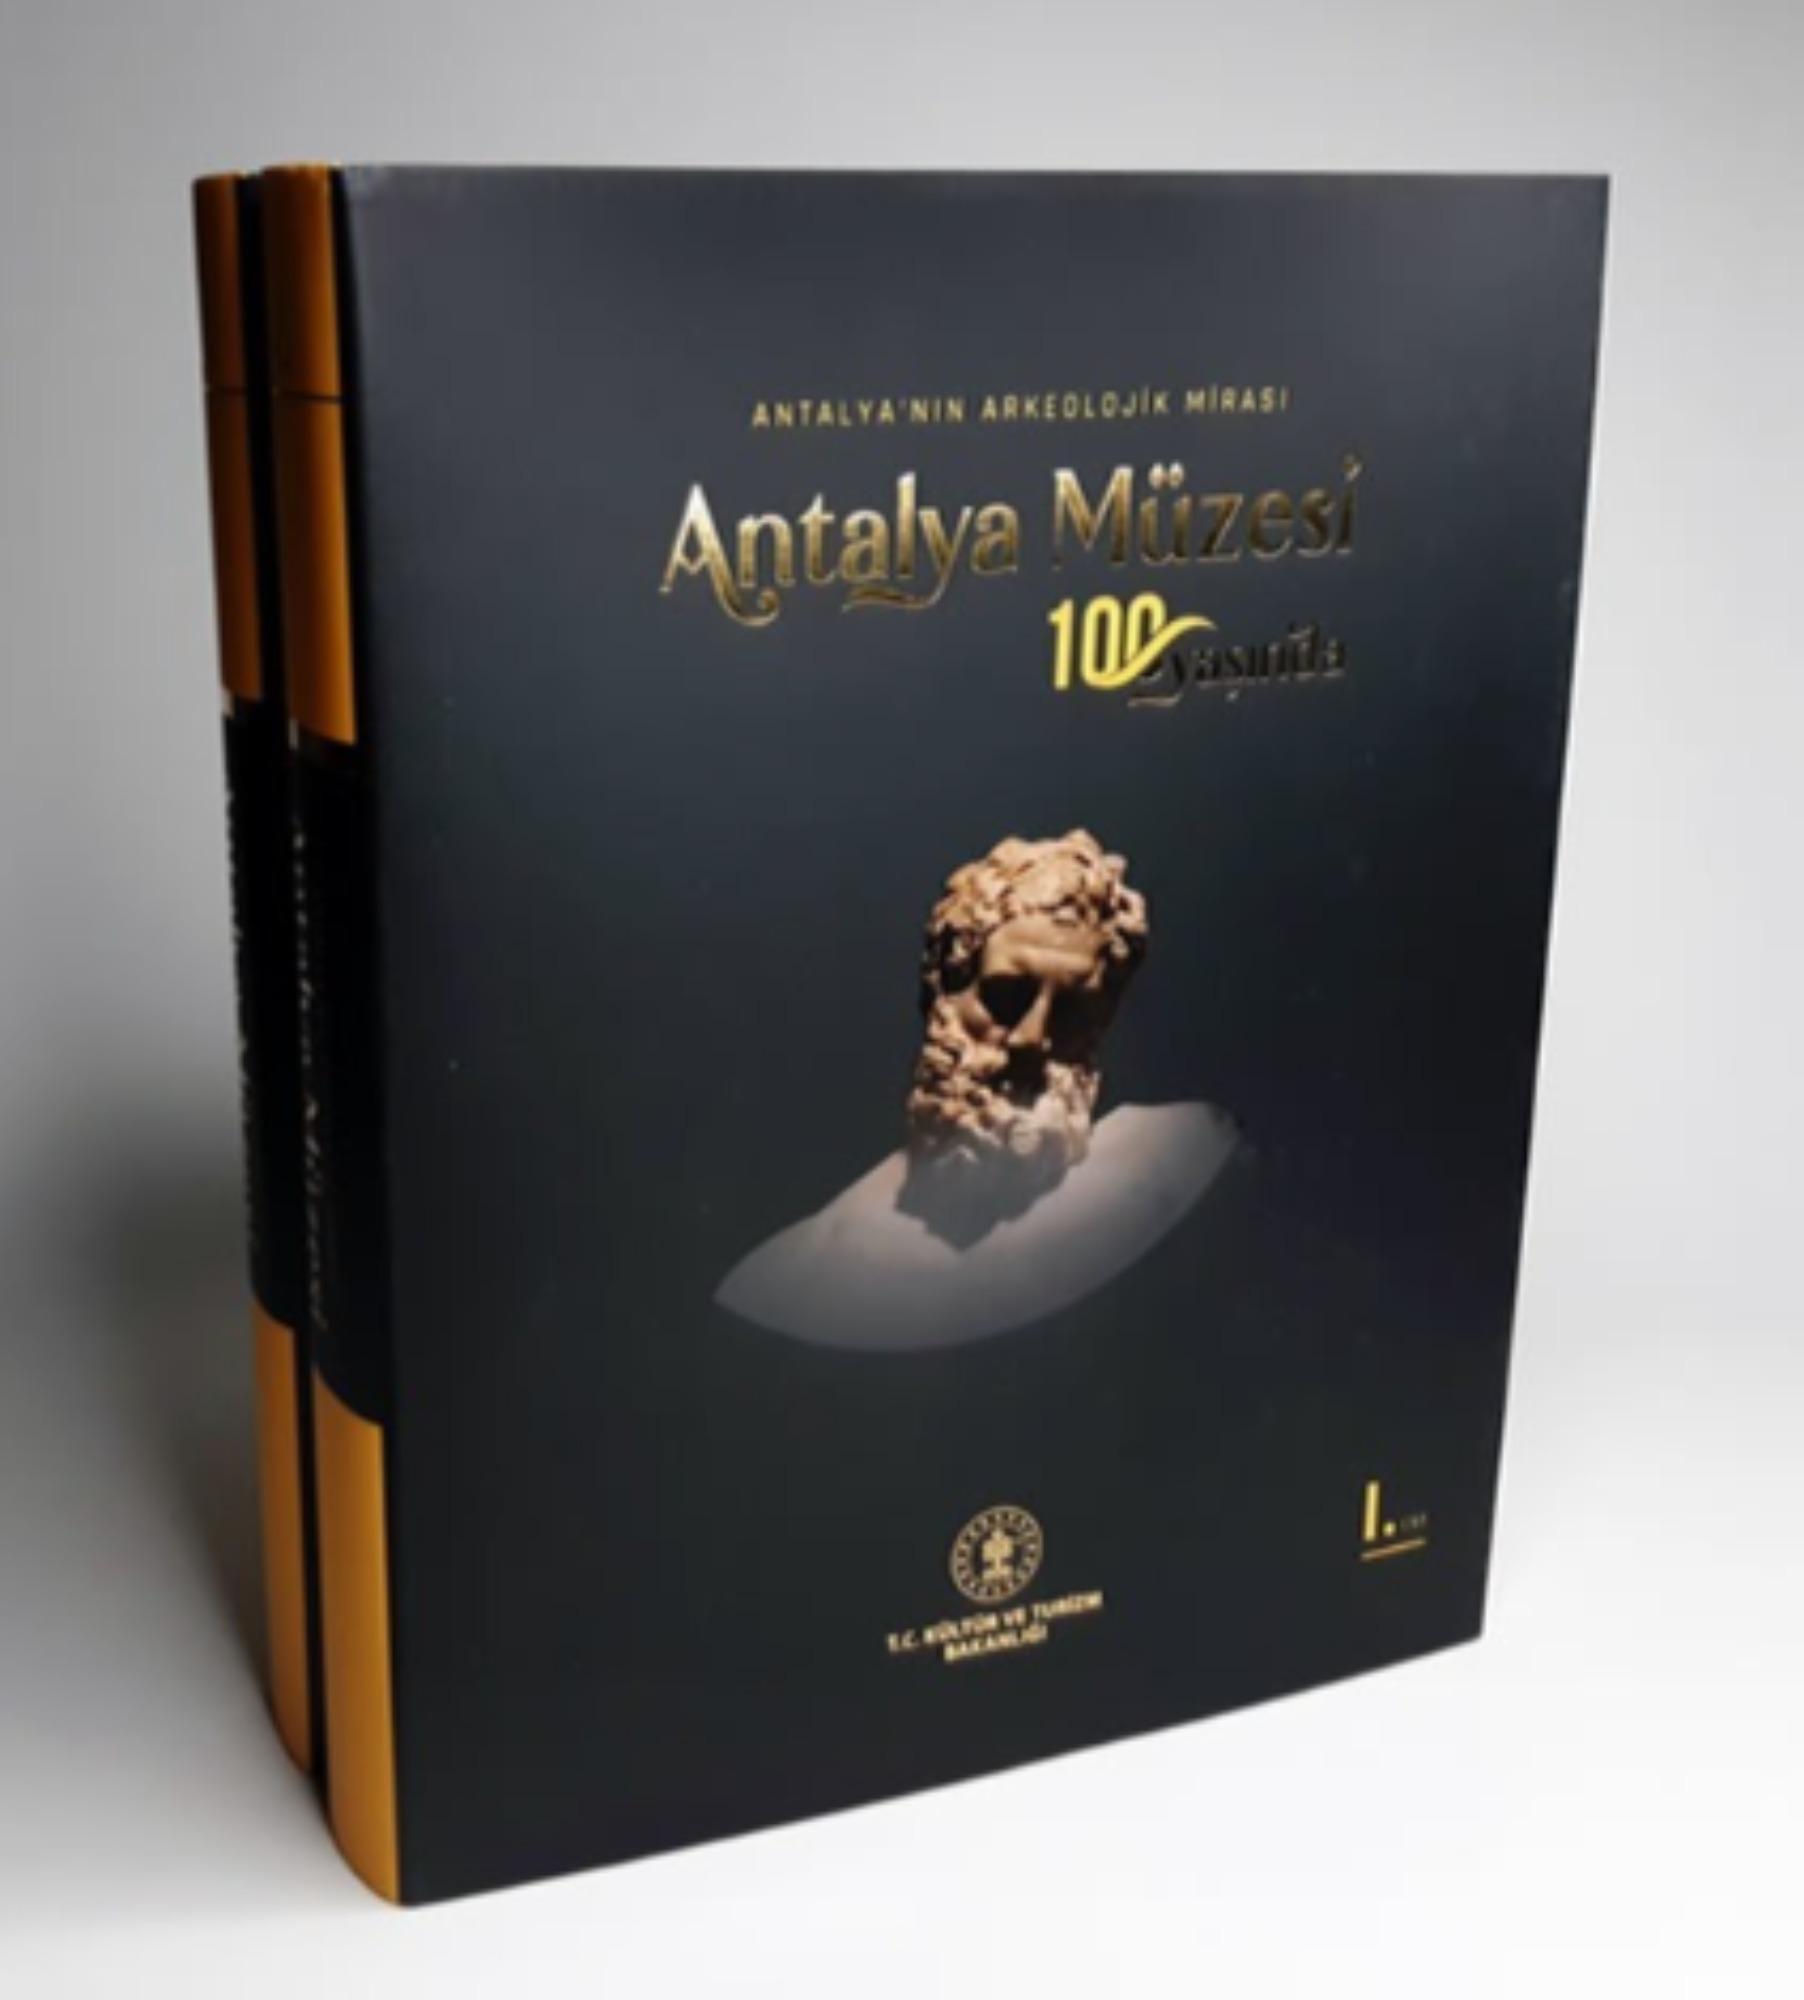 Antalya Müzesi 100 Yaşında. Antalya’nın Arkeolojik Mirası Mustafa Demirel – Murat Arslan – Süleyman Atalay – Uğurcan Orhan (eds.),